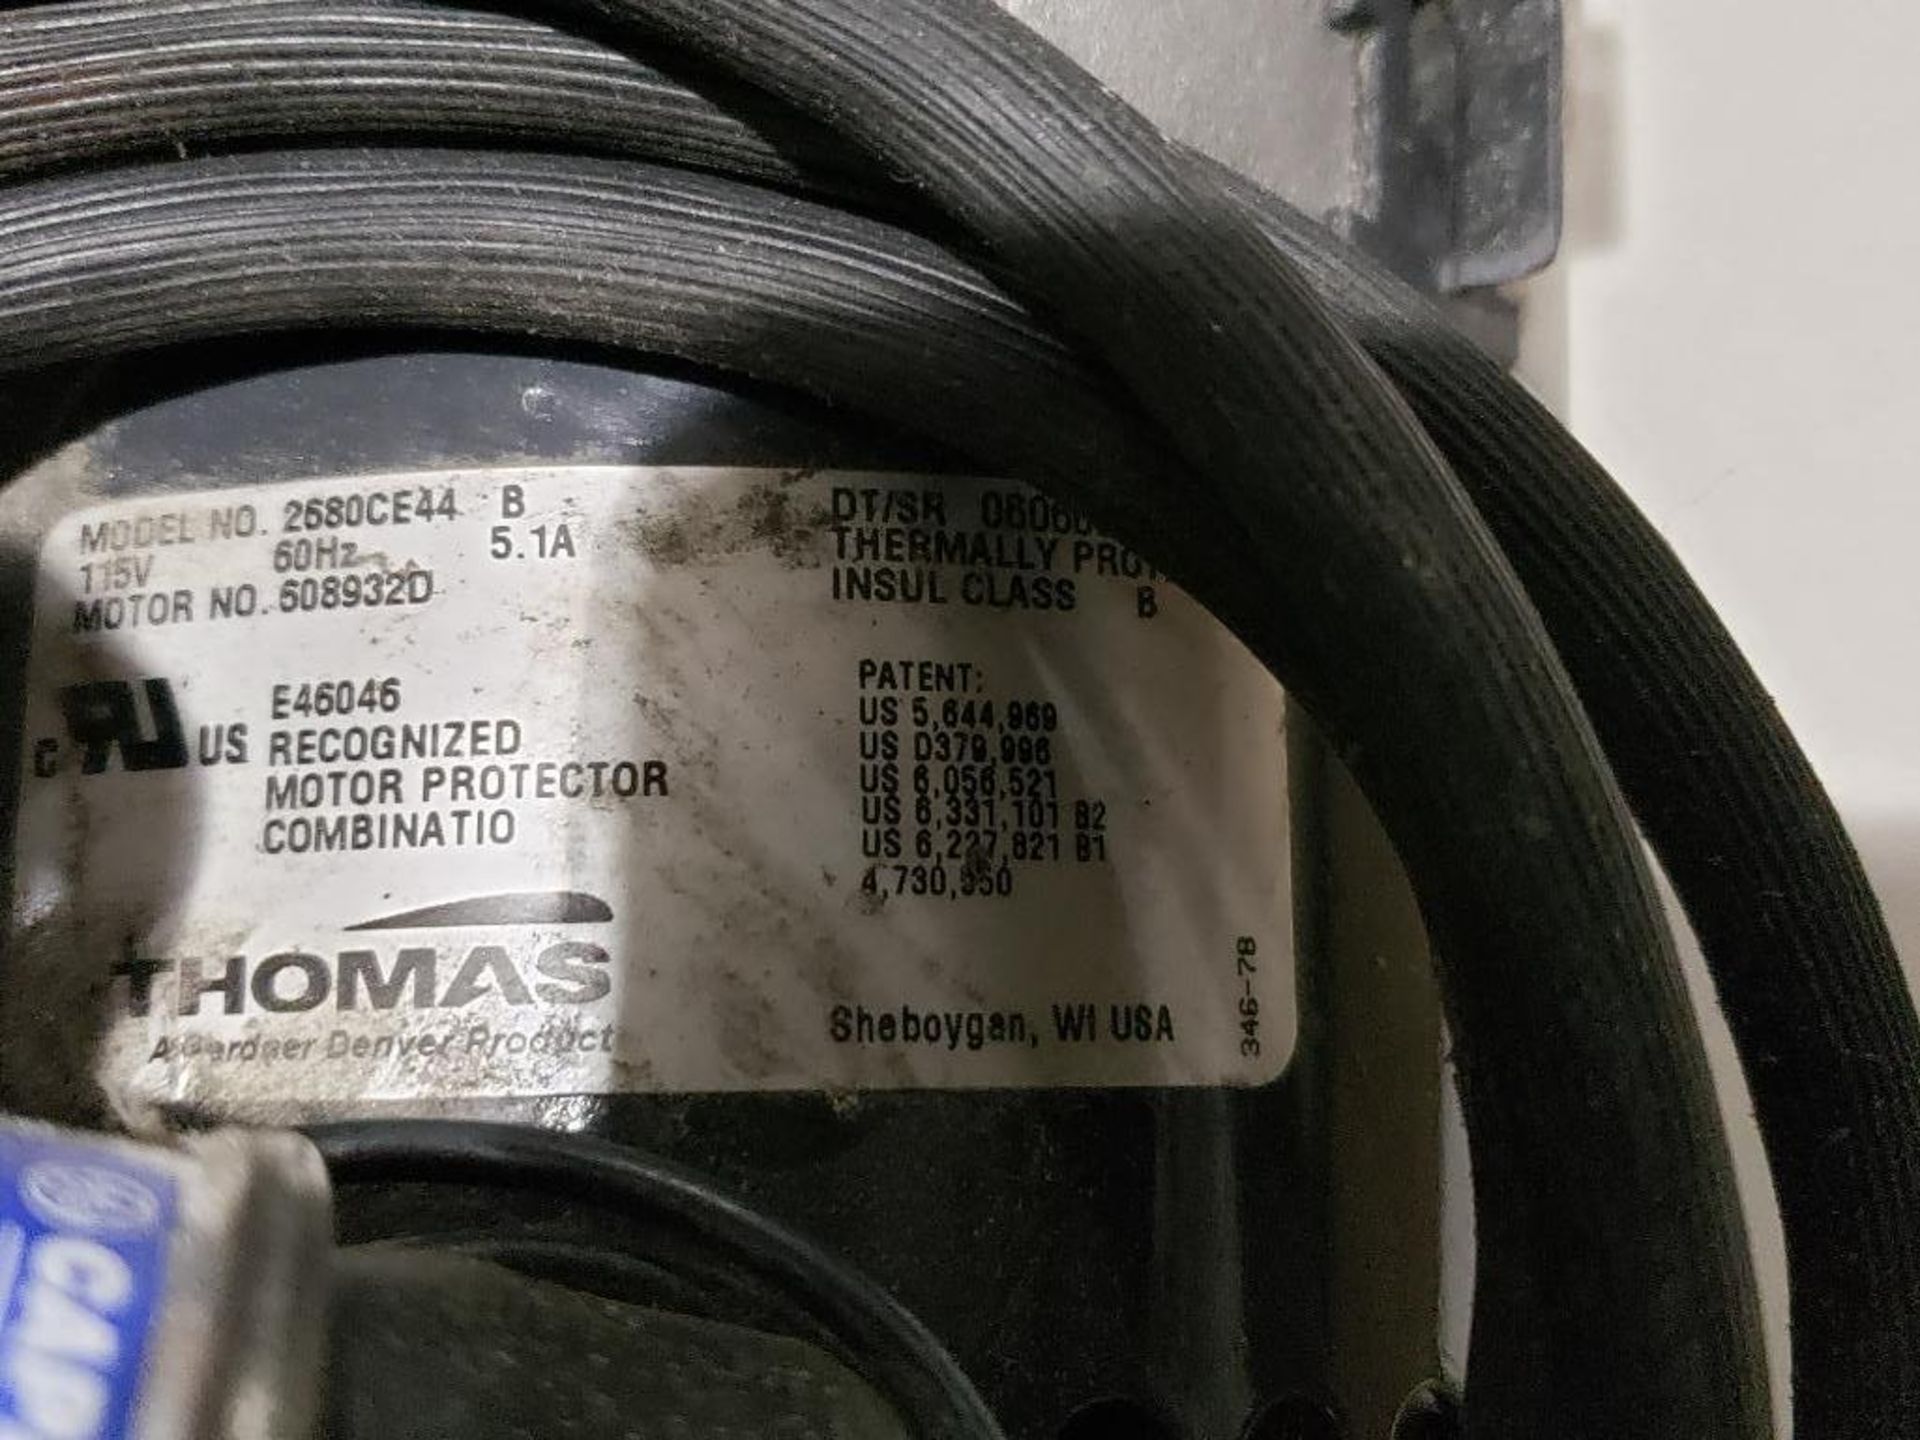 Thomas Gardner Denver oil-less piston air compressor vacuum pump. Model 2680CE44. - Image 5 of 8